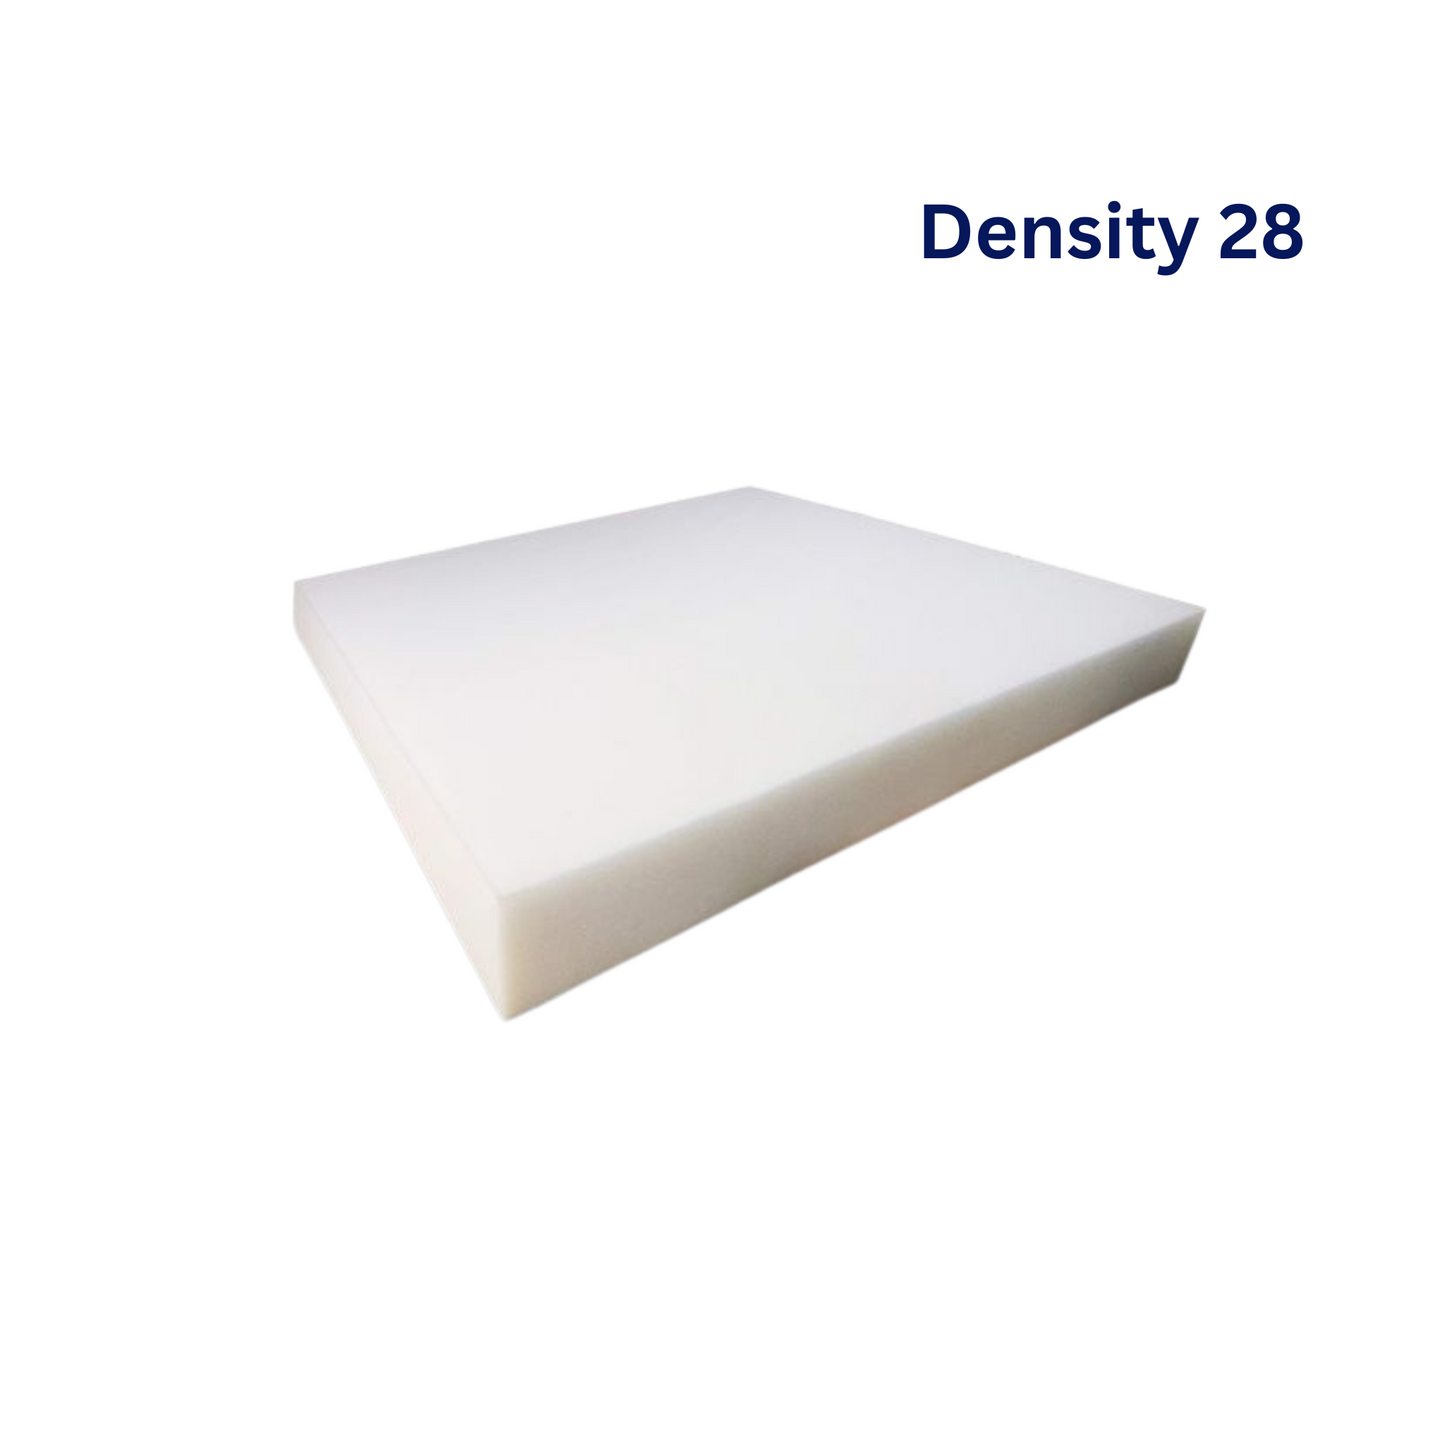 Foam Density 28